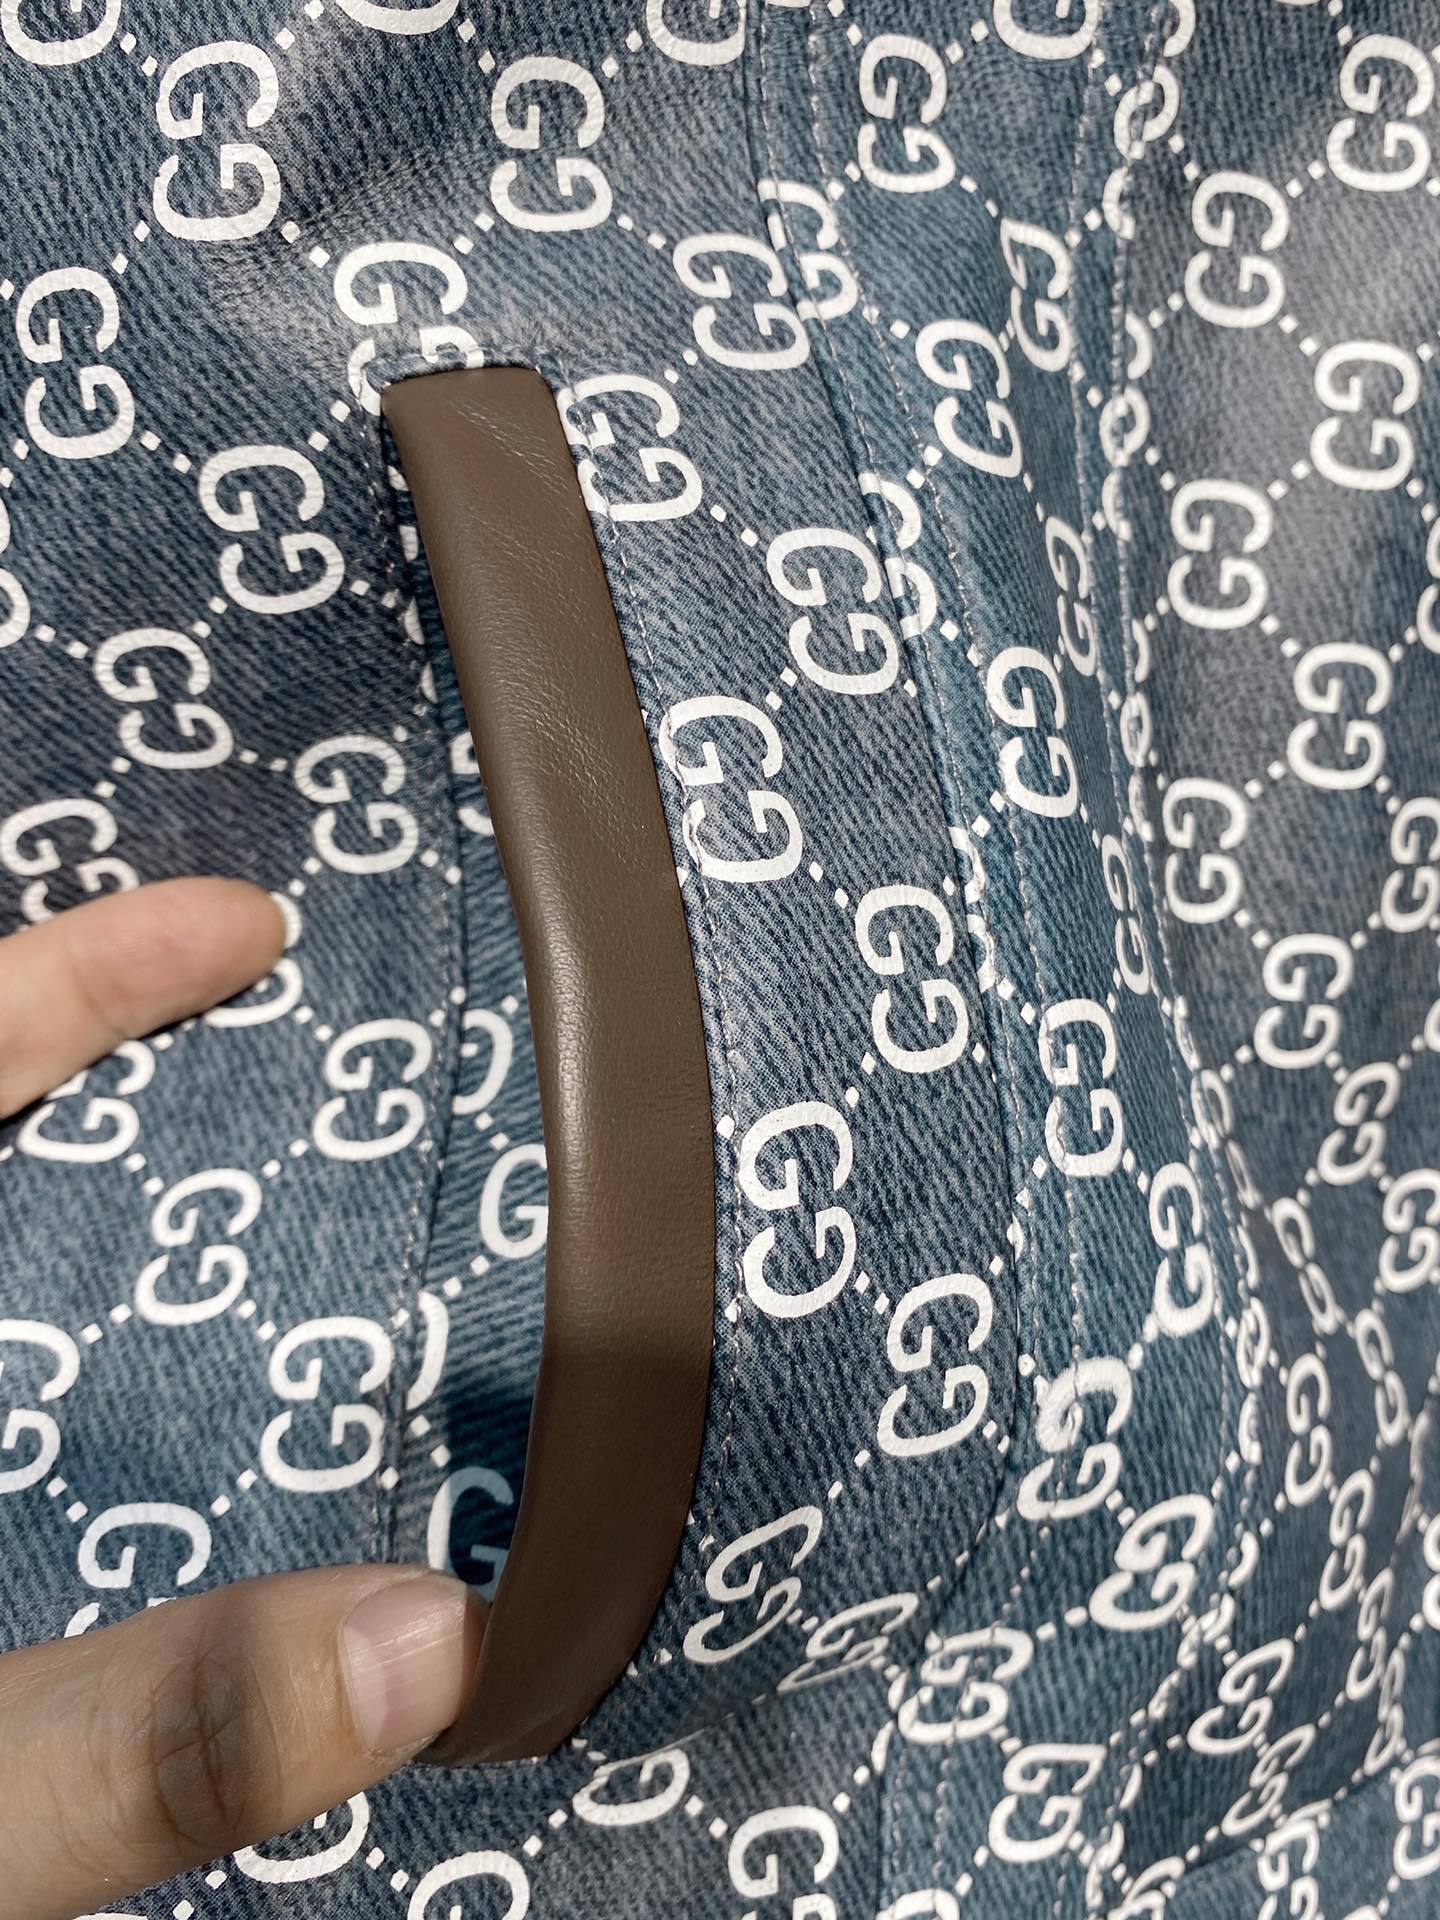 GUCCI 秋冬新品 采用进口绵羊皮 数码印花工艺 经典翻领口袋设计